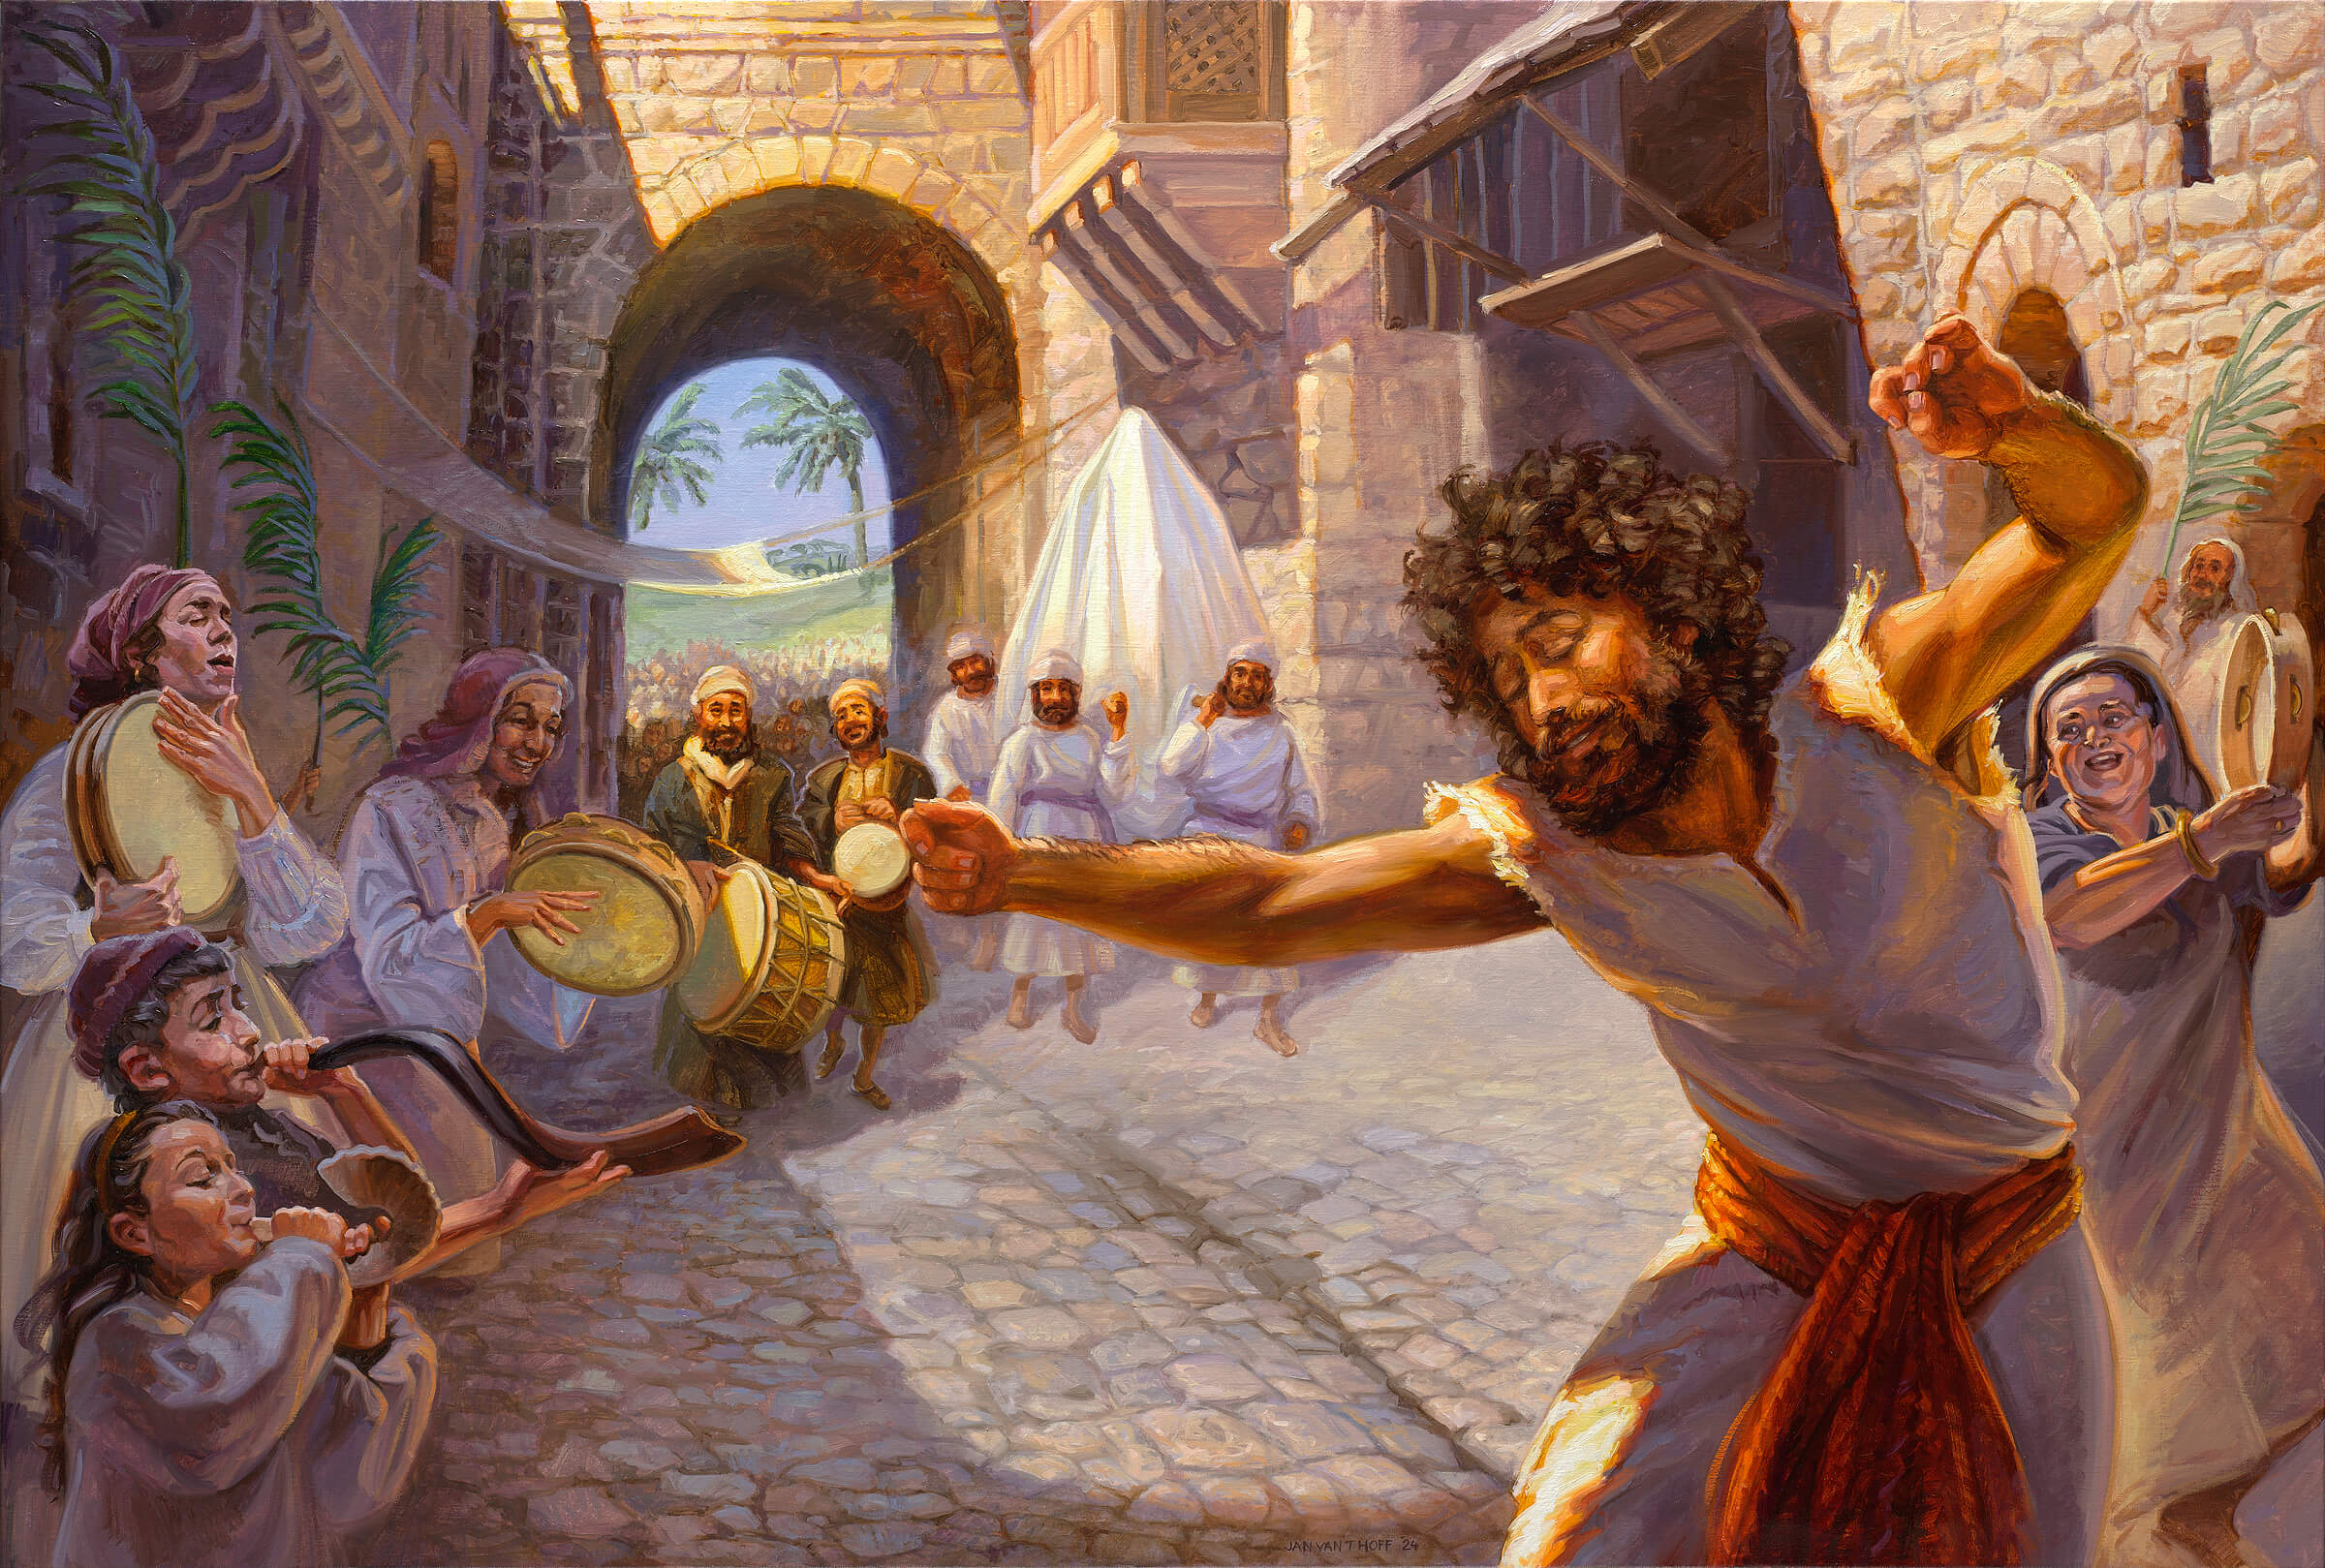 Dawid sprowadza Skrzynię Przywierza do Jeruzalemu